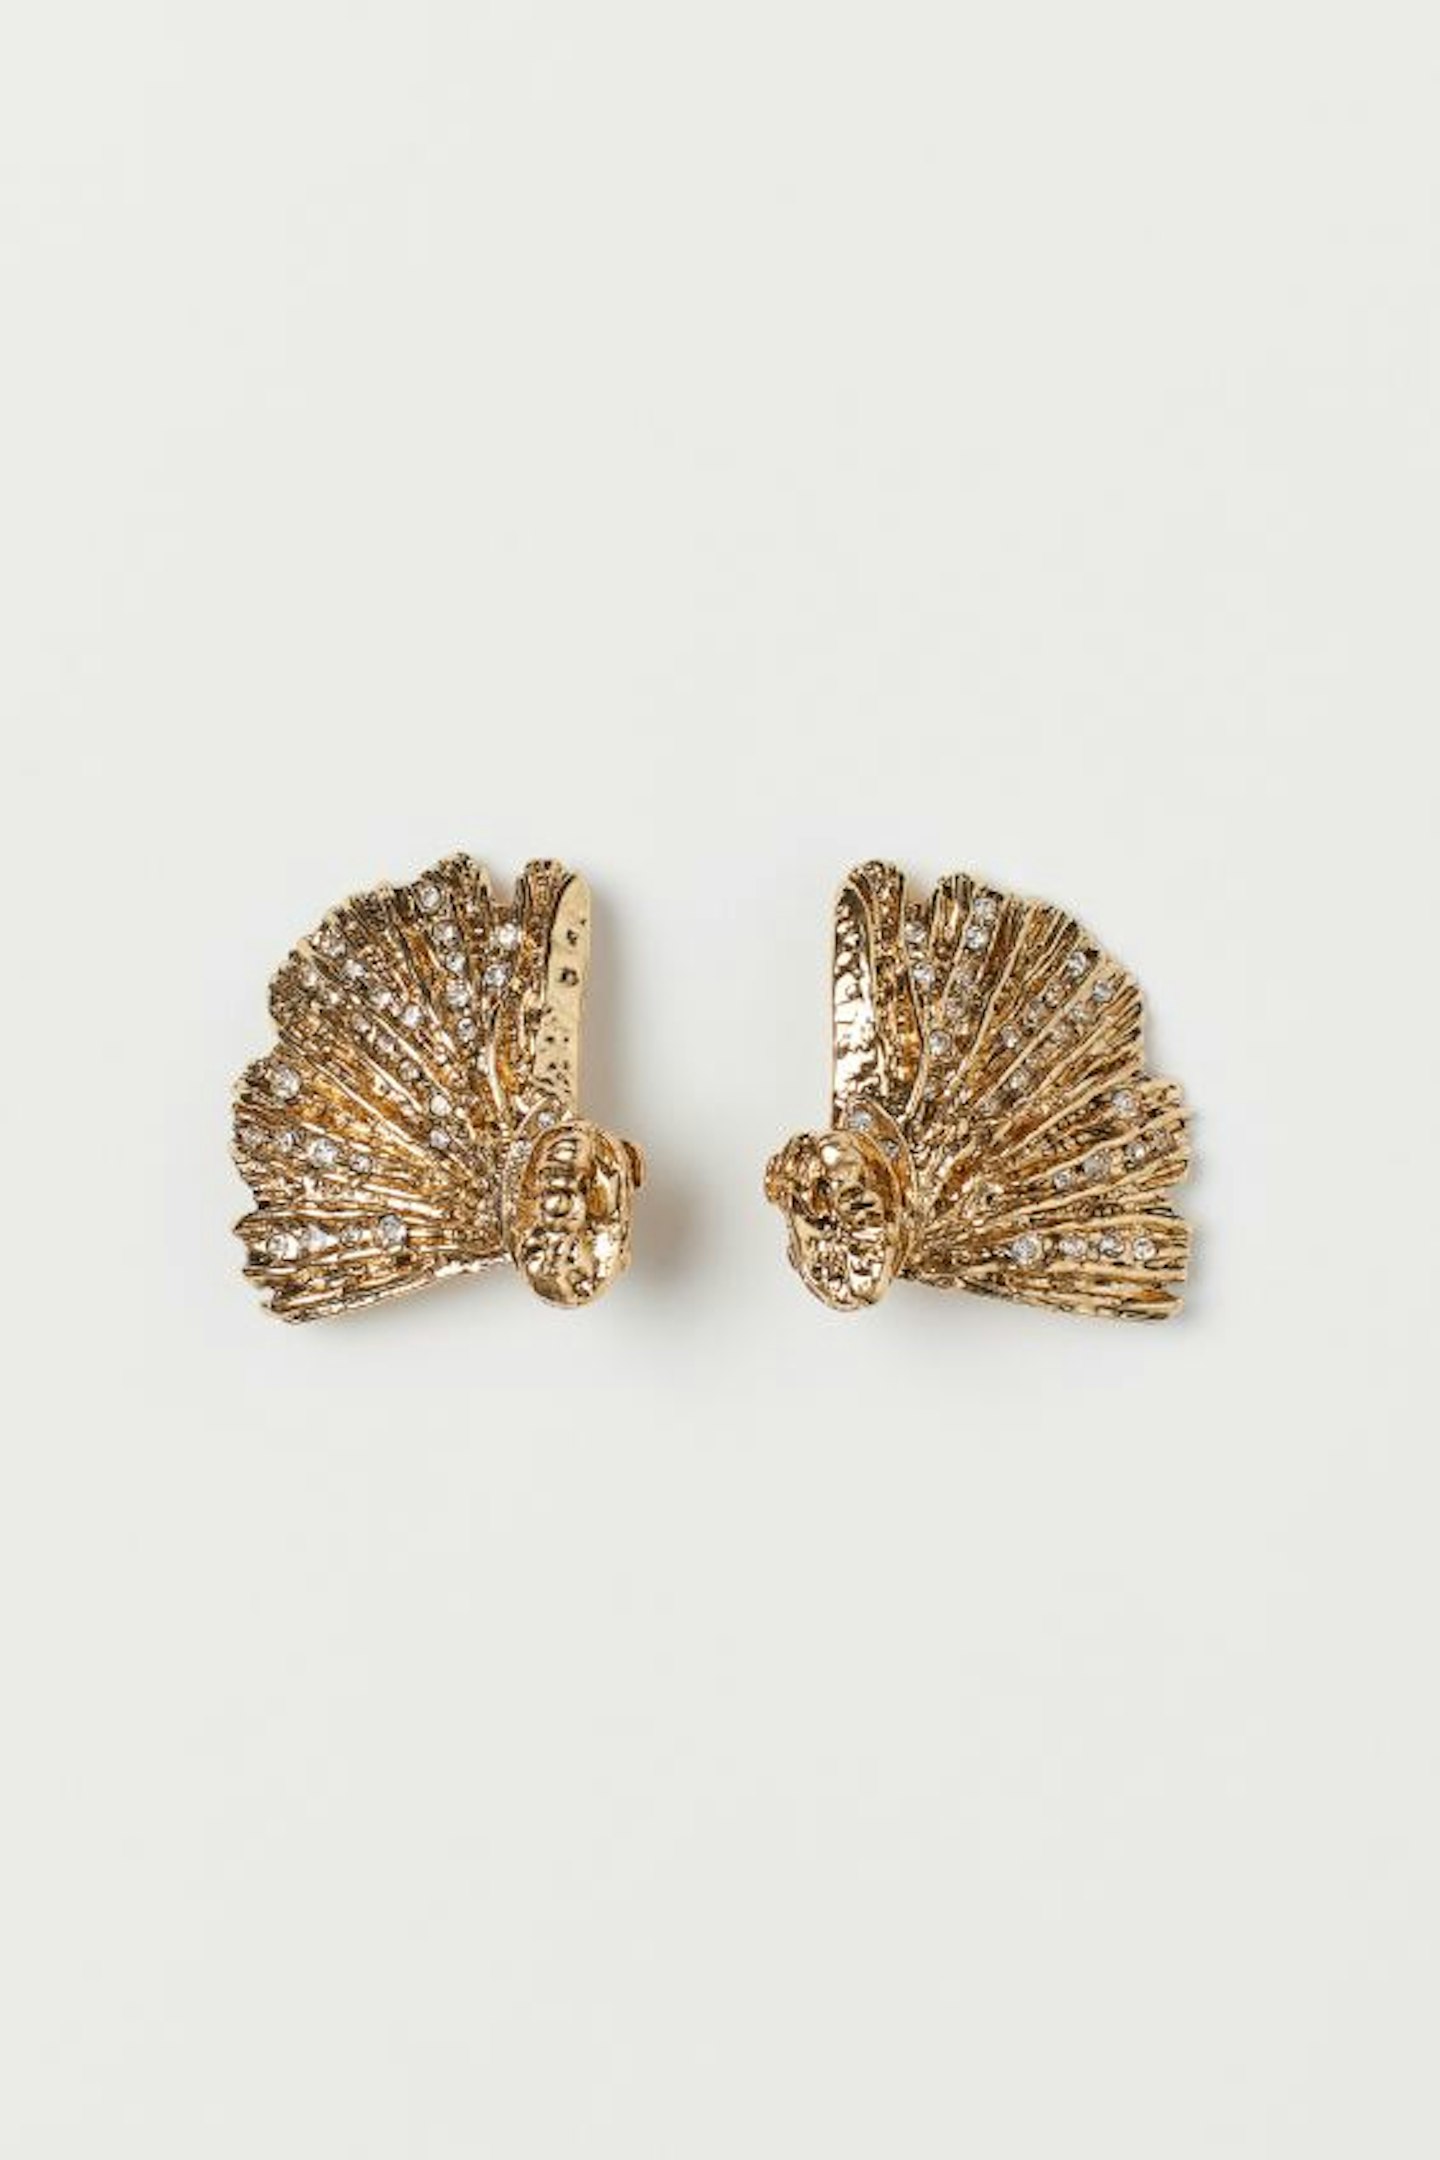 H&M earrings